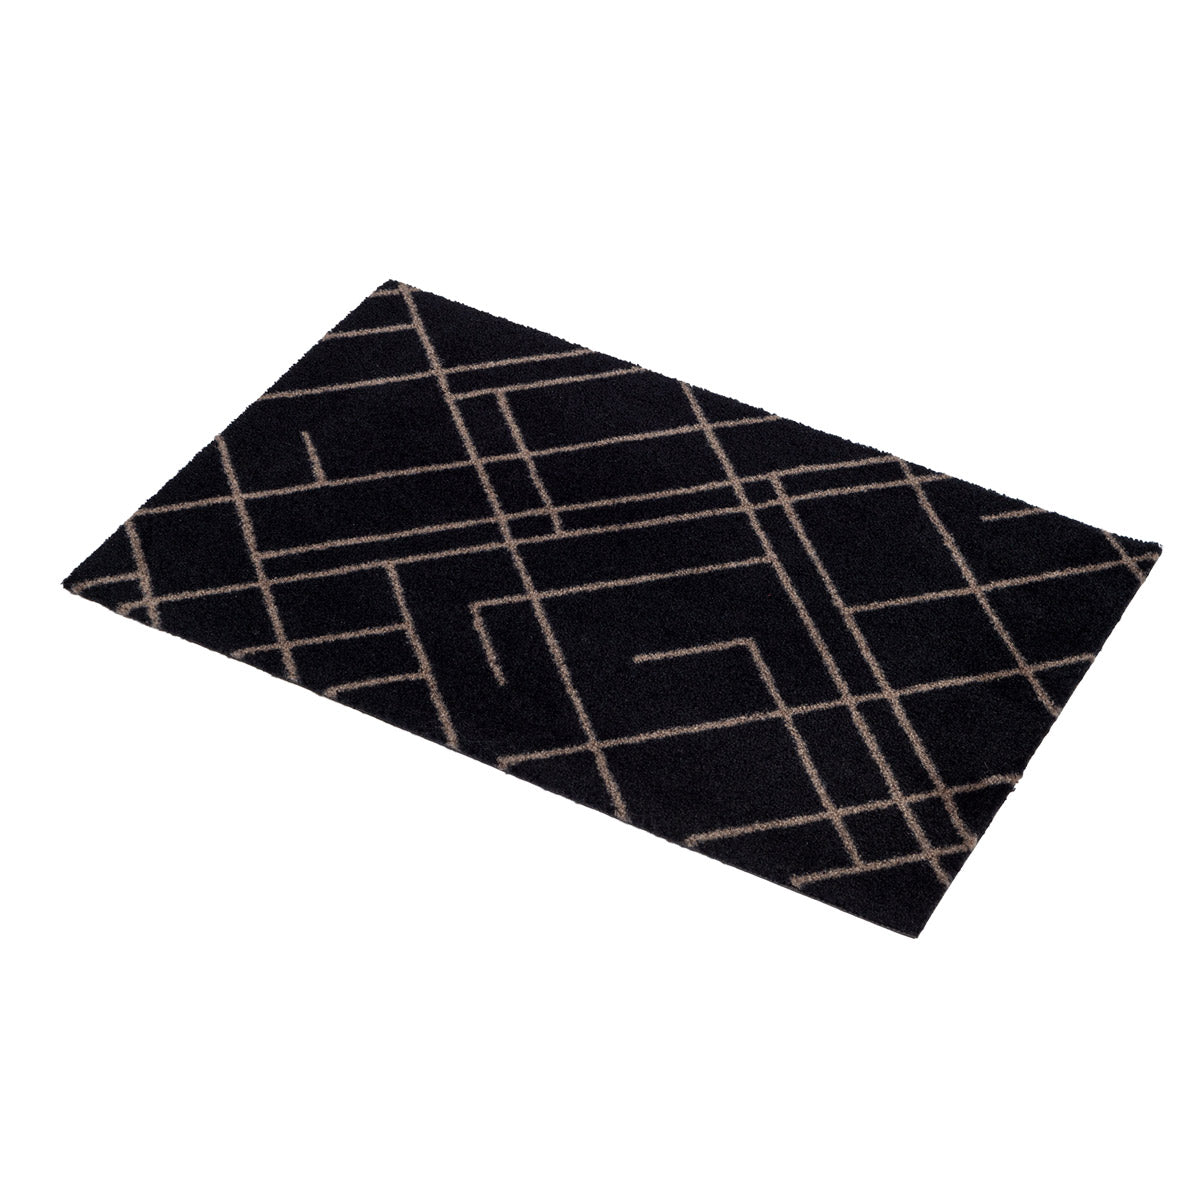 Bodenmatte 40 x 60 cm - Linien/Sandschwarz